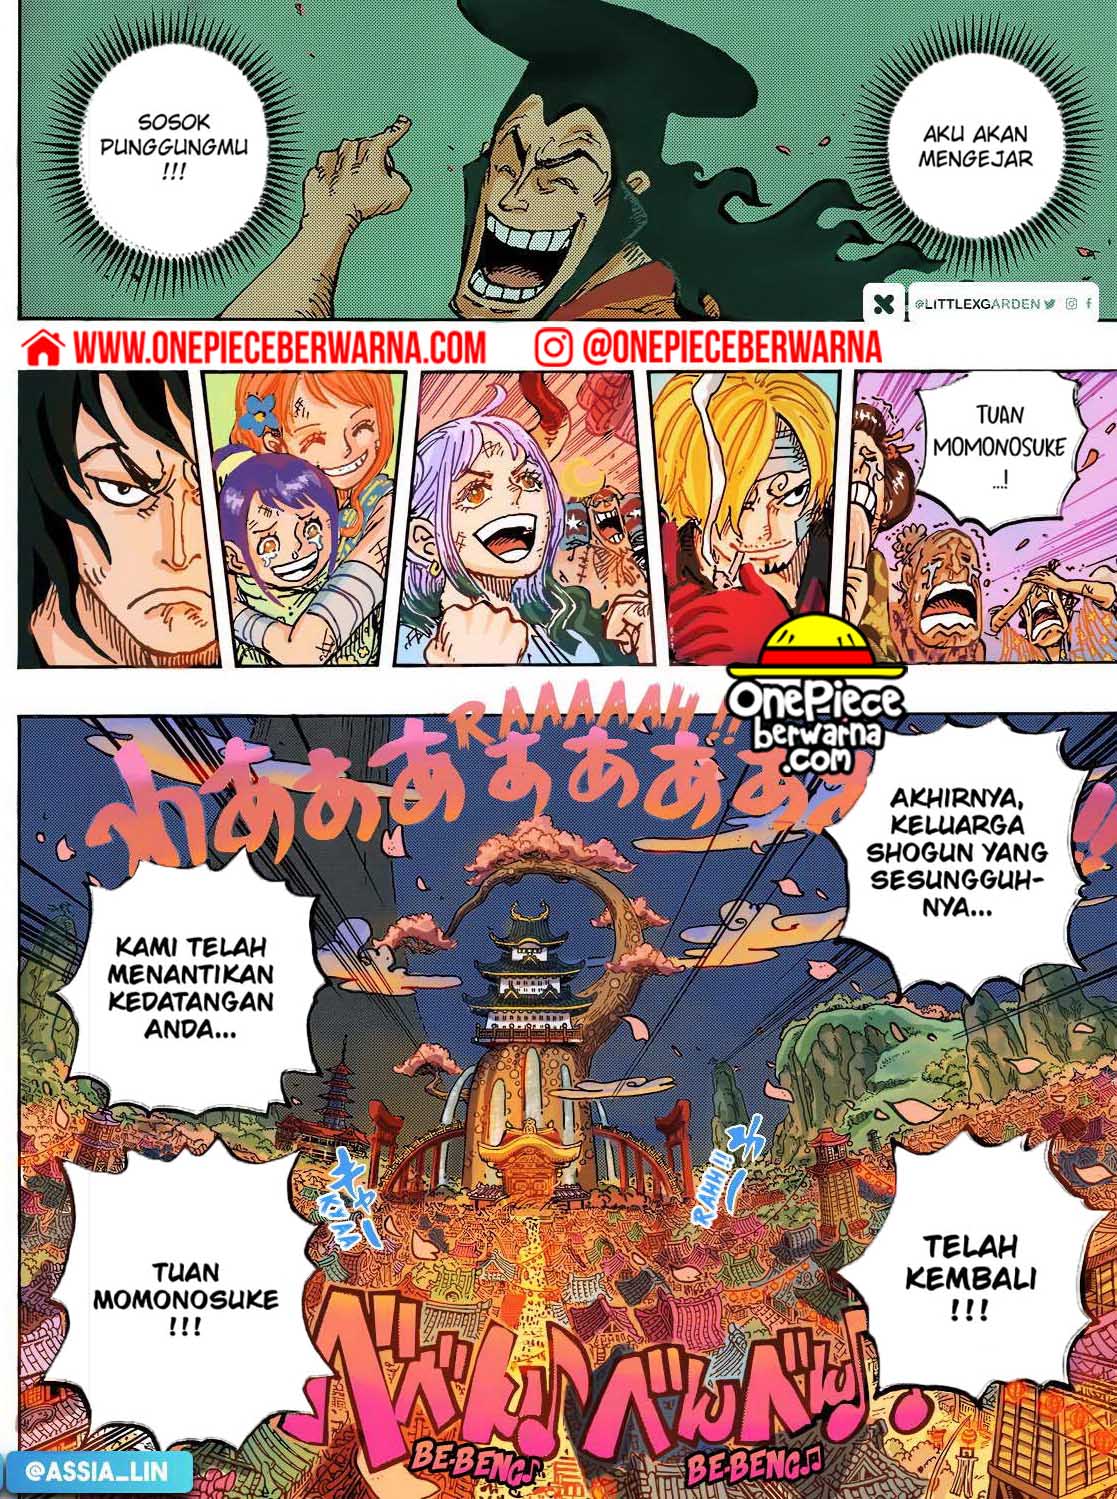 One Piece Berwarna Chapter 1051